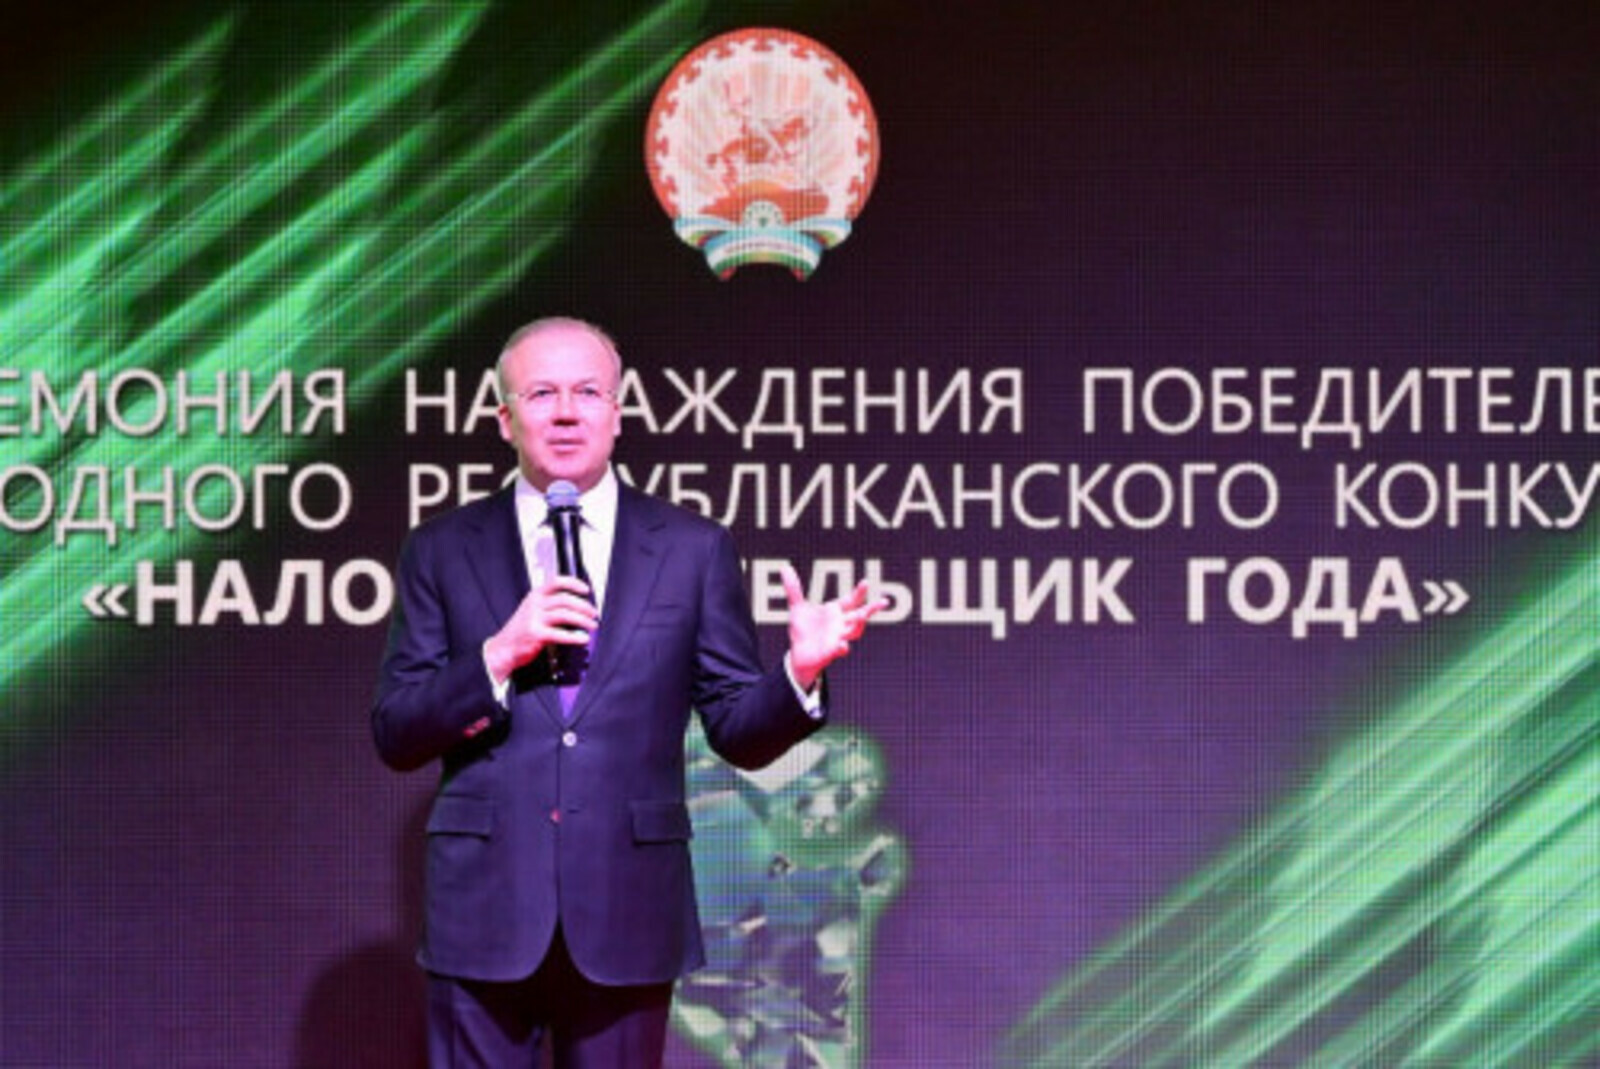 Андрей Назаров наградил победителей республиканского конкурса «Налогоплательщик года»